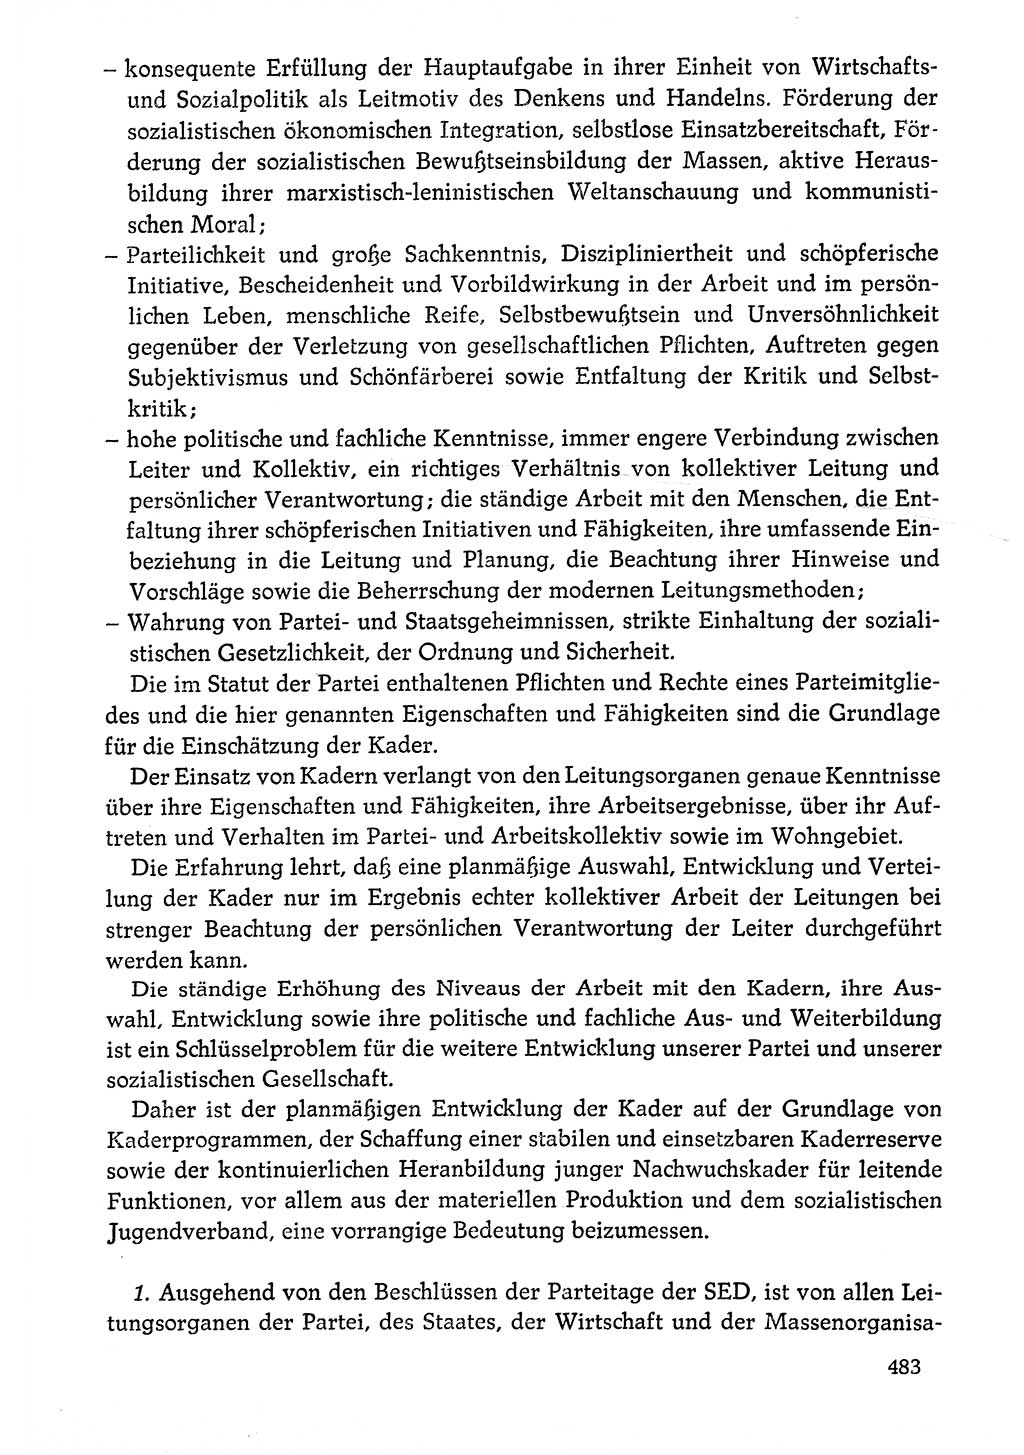 Dokumente der Sozialistischen Einheitspartei Deutschlands (SED) [Deutsche Demokratische Republik (DDR)] 1976-1977, Seite 483 (Dok. SED DDR 1976-1977, S. 483)